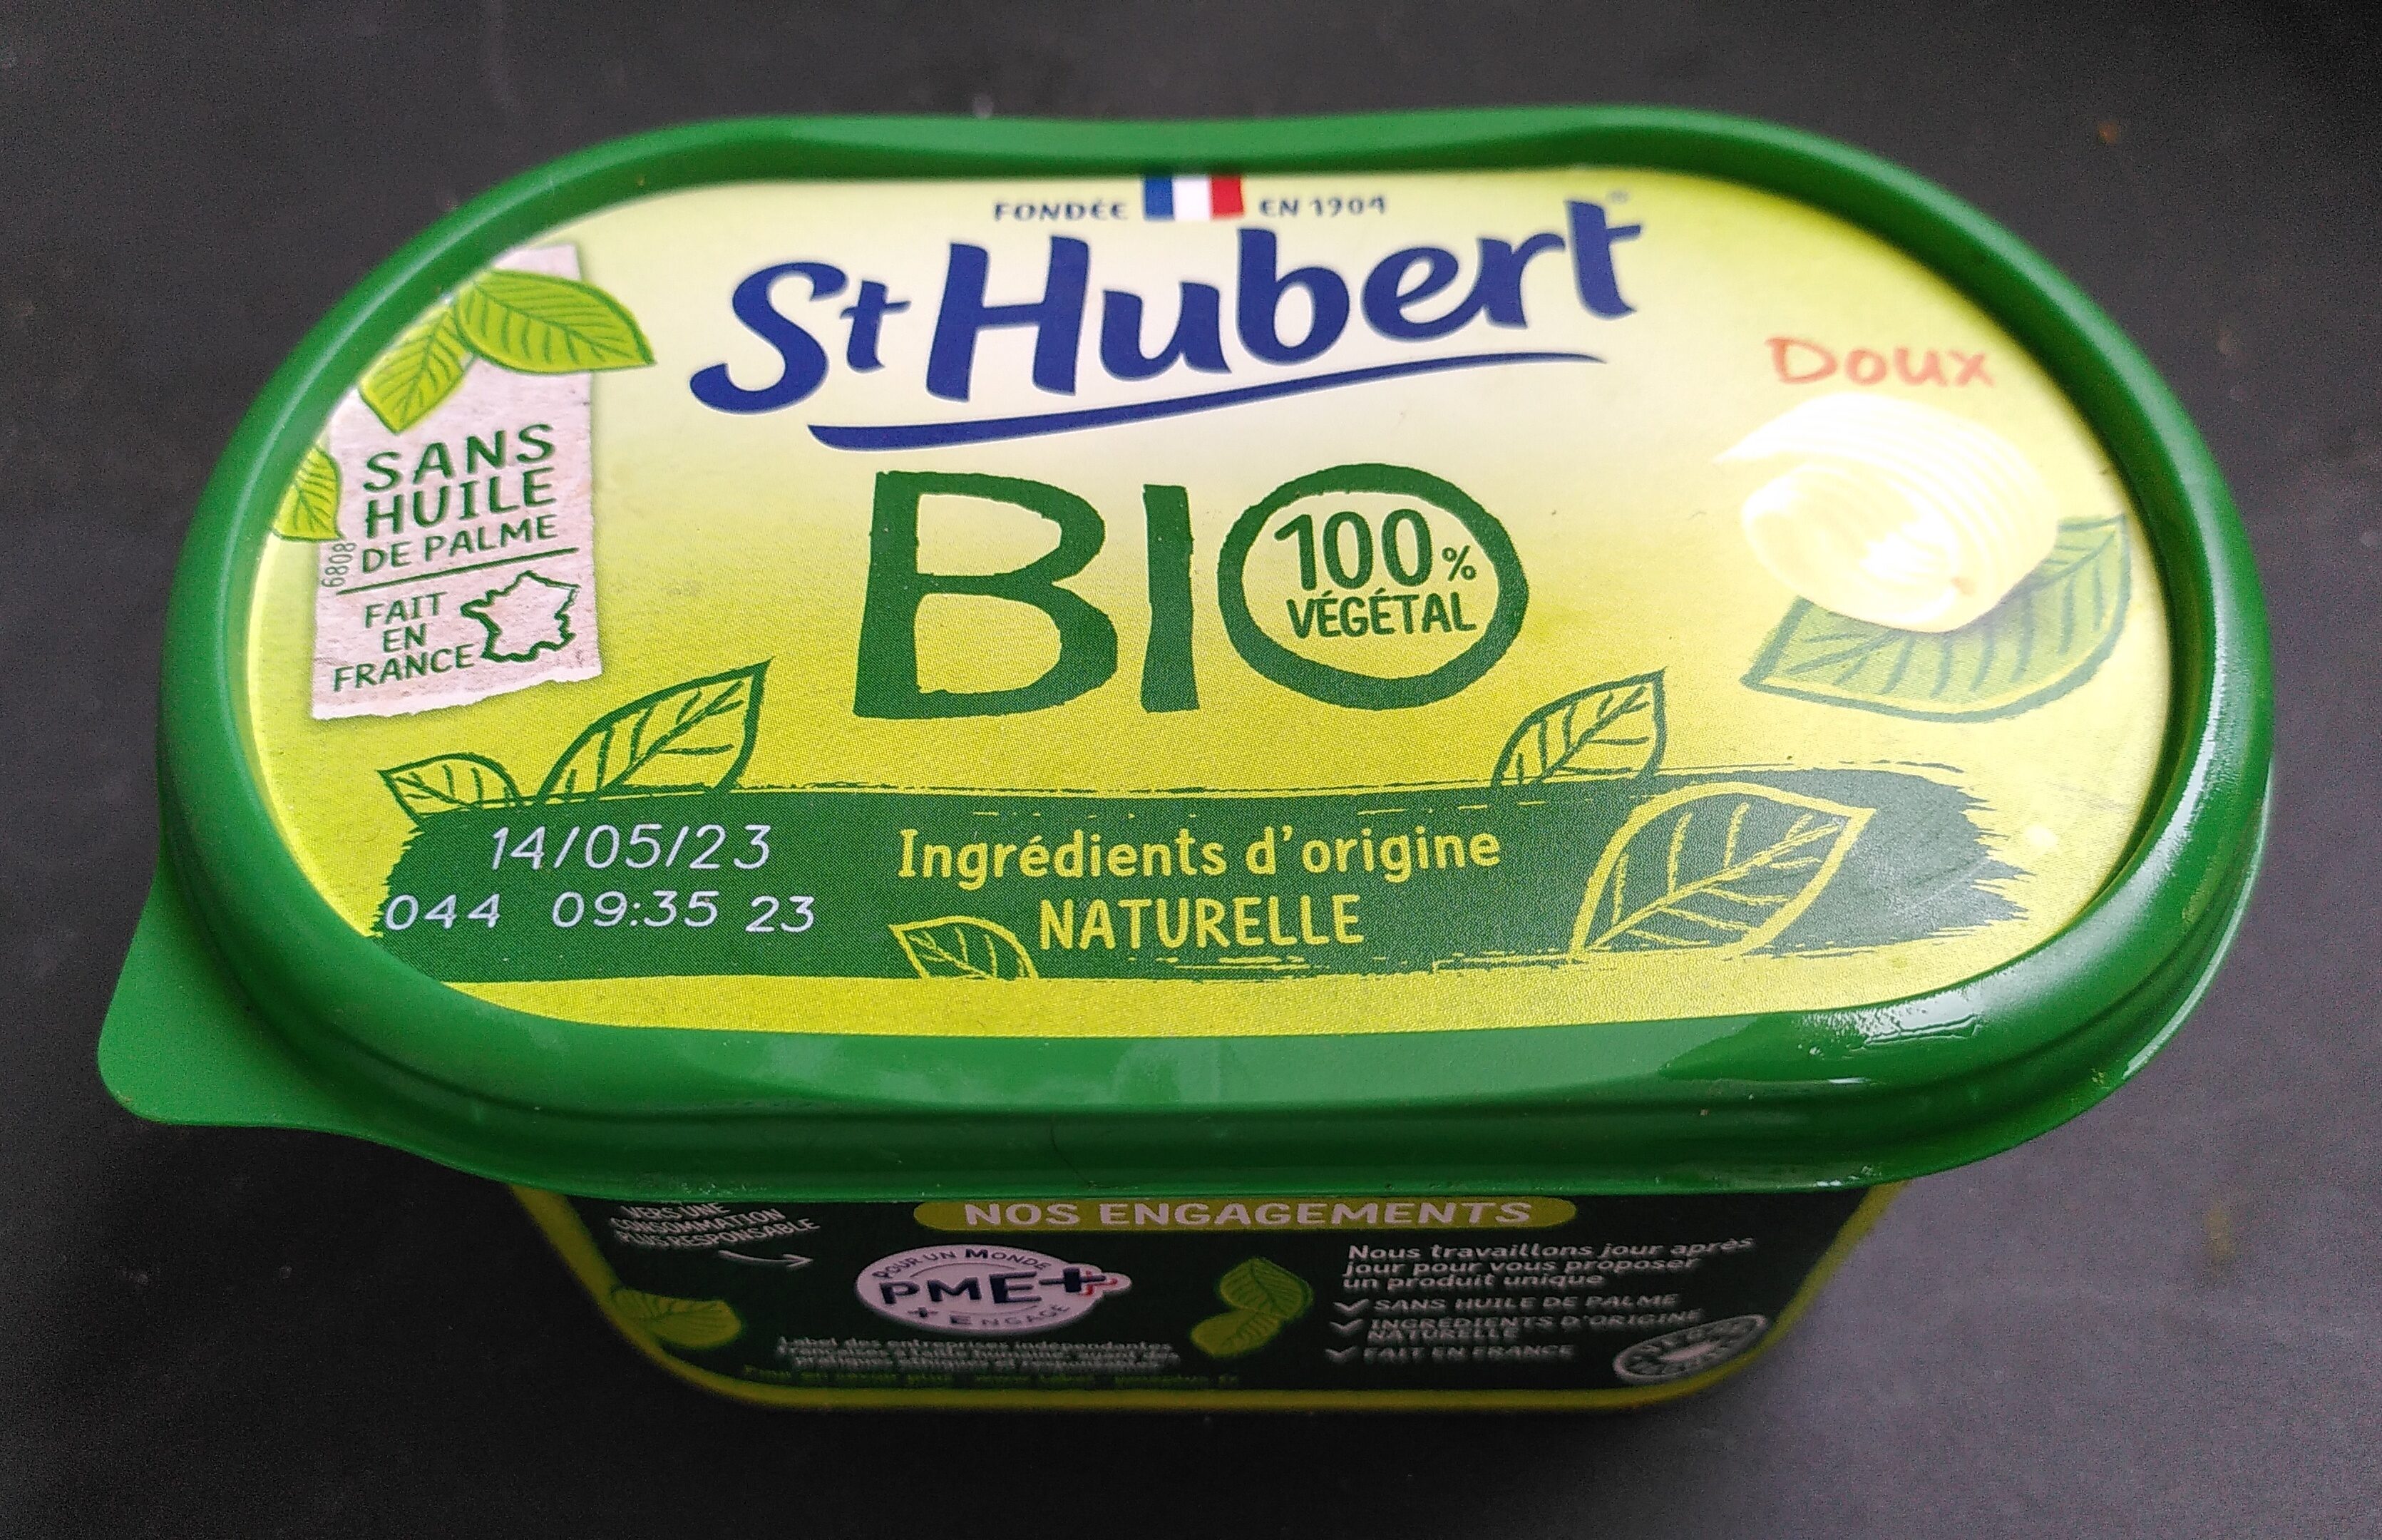 St hubert bio 490 g doux sans huile de palme - Product - fr